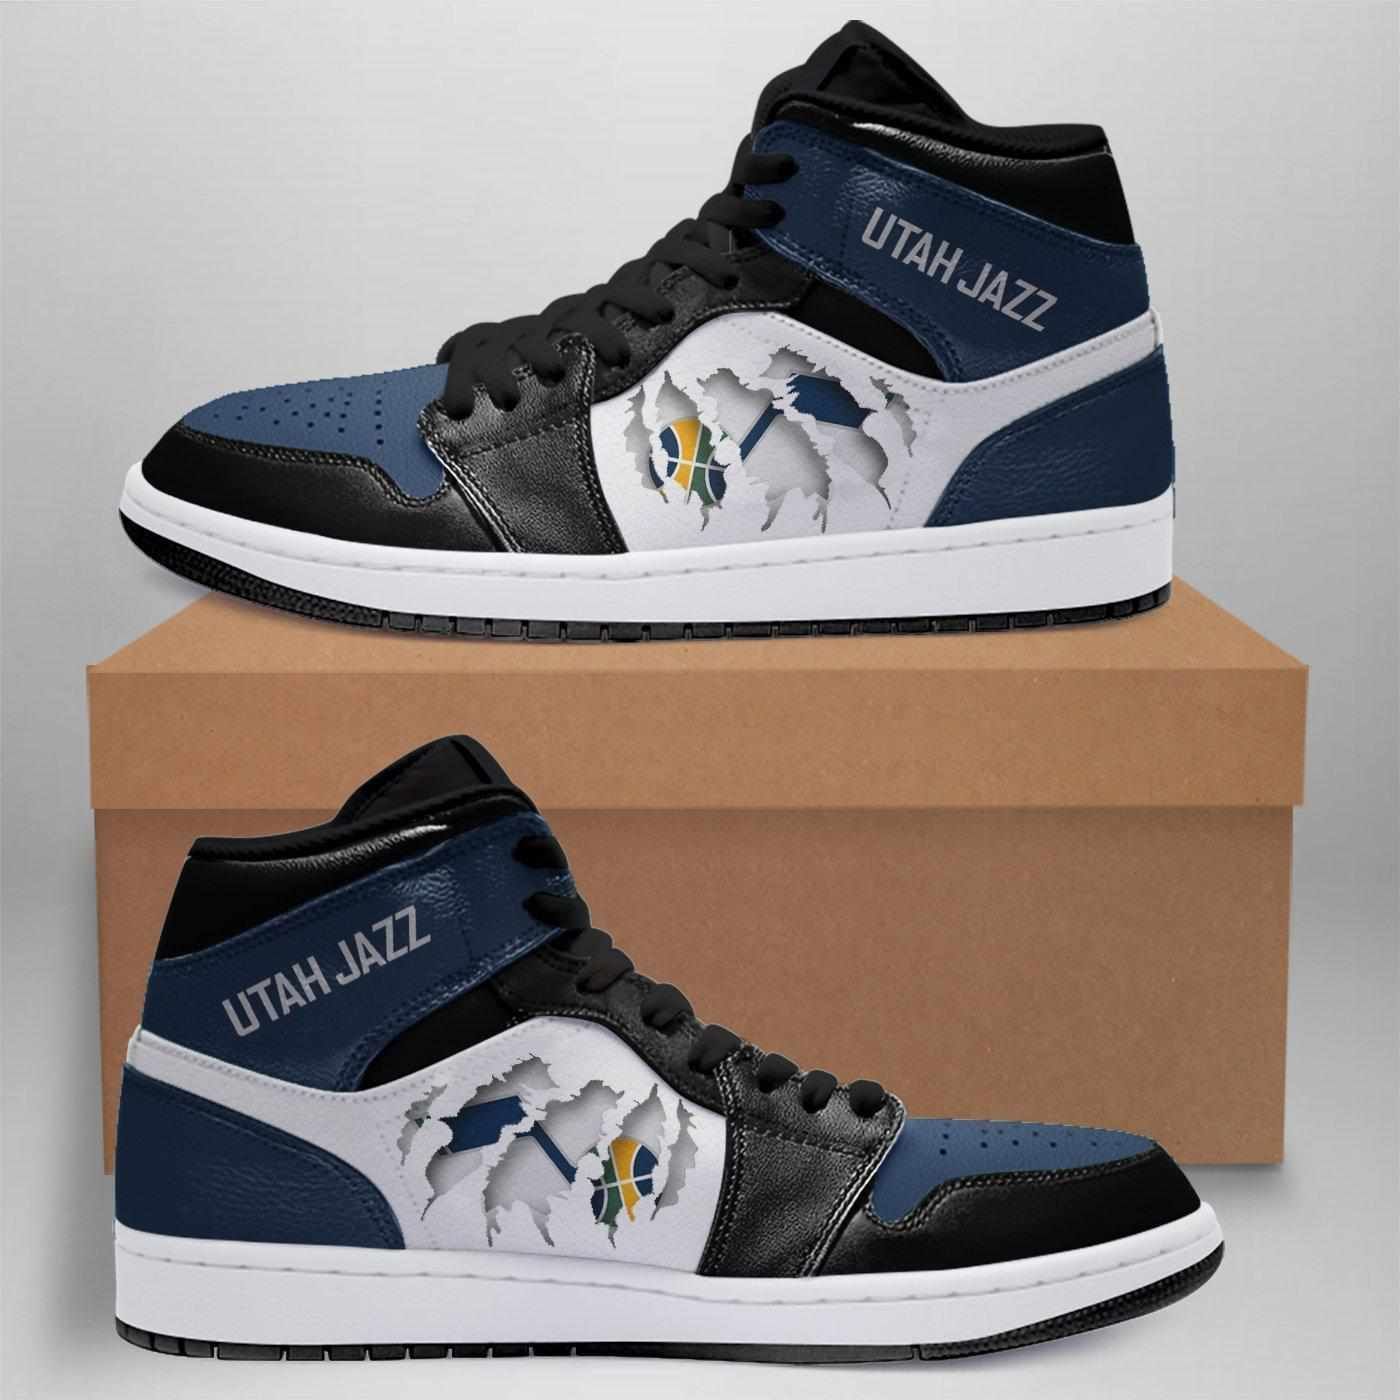 Nba Utah Jazz Air Jordan 2021 Limited Eachstep Shoes Sport Sneakers